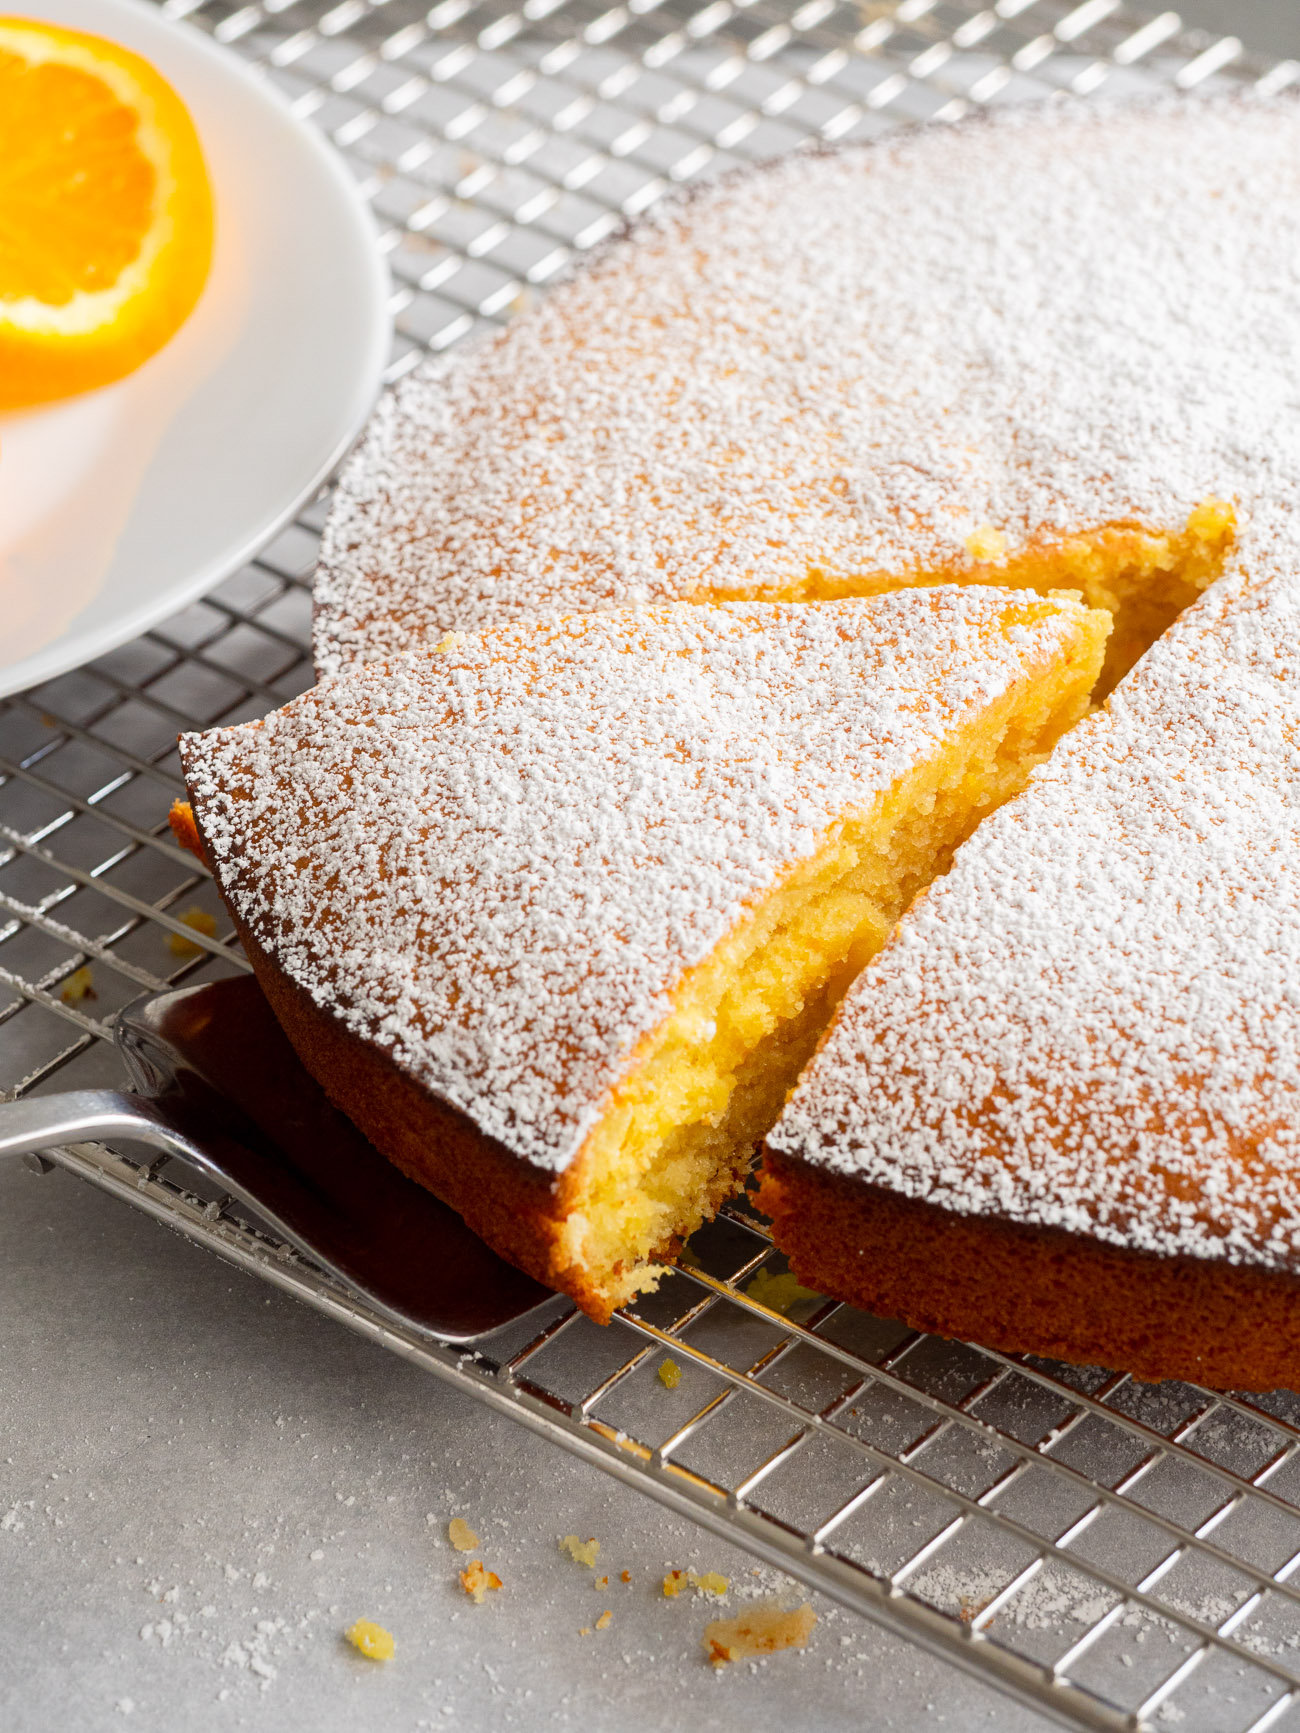 Amazing Orange Cake Recipe - Rich and Moist Orange Cake - YouTube